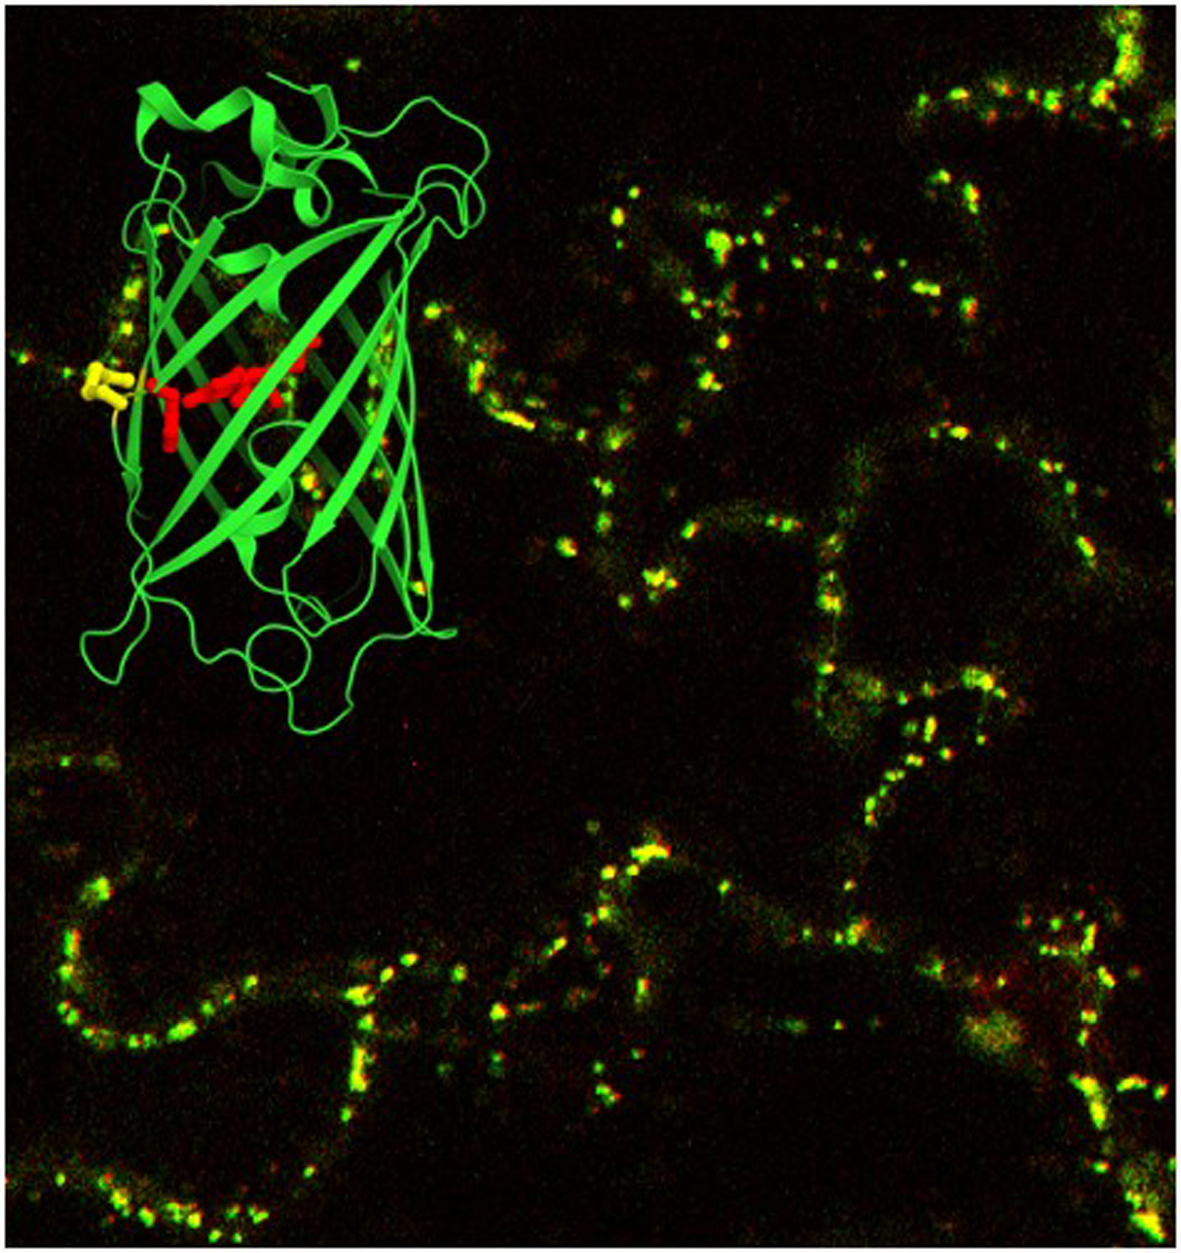 “Strukturmodel eines fluoreszierenden redox-sensitiven Proteinsensors (roGFP) vor einer mikroskopischen Aufnahme von Arabidopsis Blattepidermiszellen, die das Sensorprotein in den Mitochondrien (punktartige Strukturen in gelb-grün) exprimieren.”